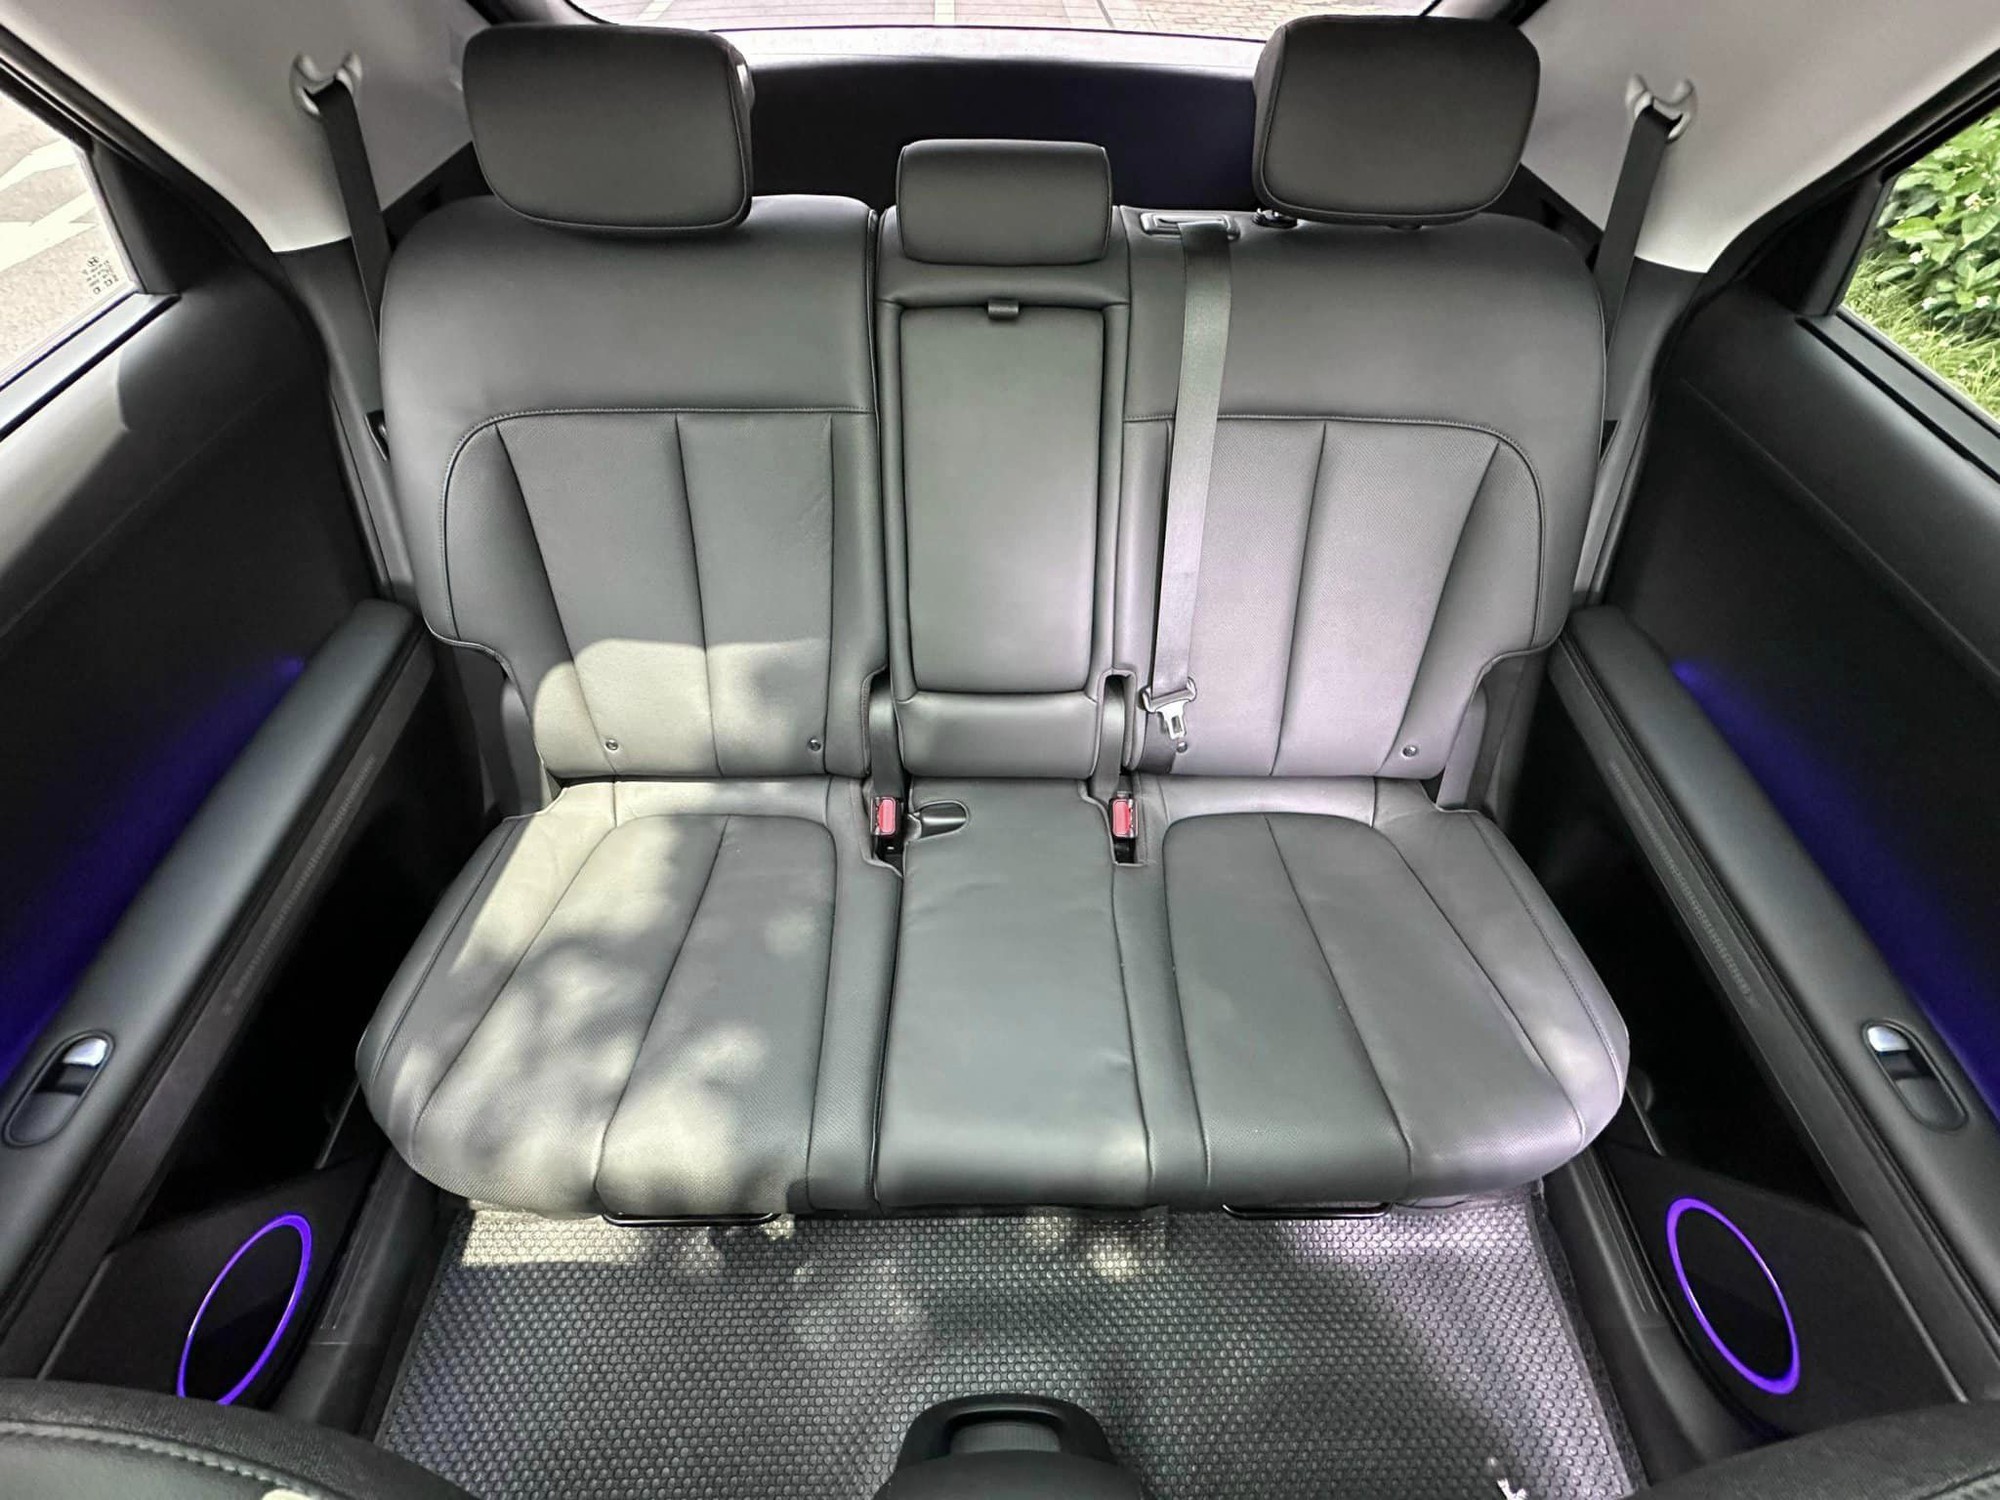 Rao bán Hyundai Ioniq 5 chạy 8.000 km ngang VinFast VF 8, dân buôn xe cũ nhận định: Hợp với người thích trải nghiệm, hoặc có vài xe ở nhà- Ảnh 13.